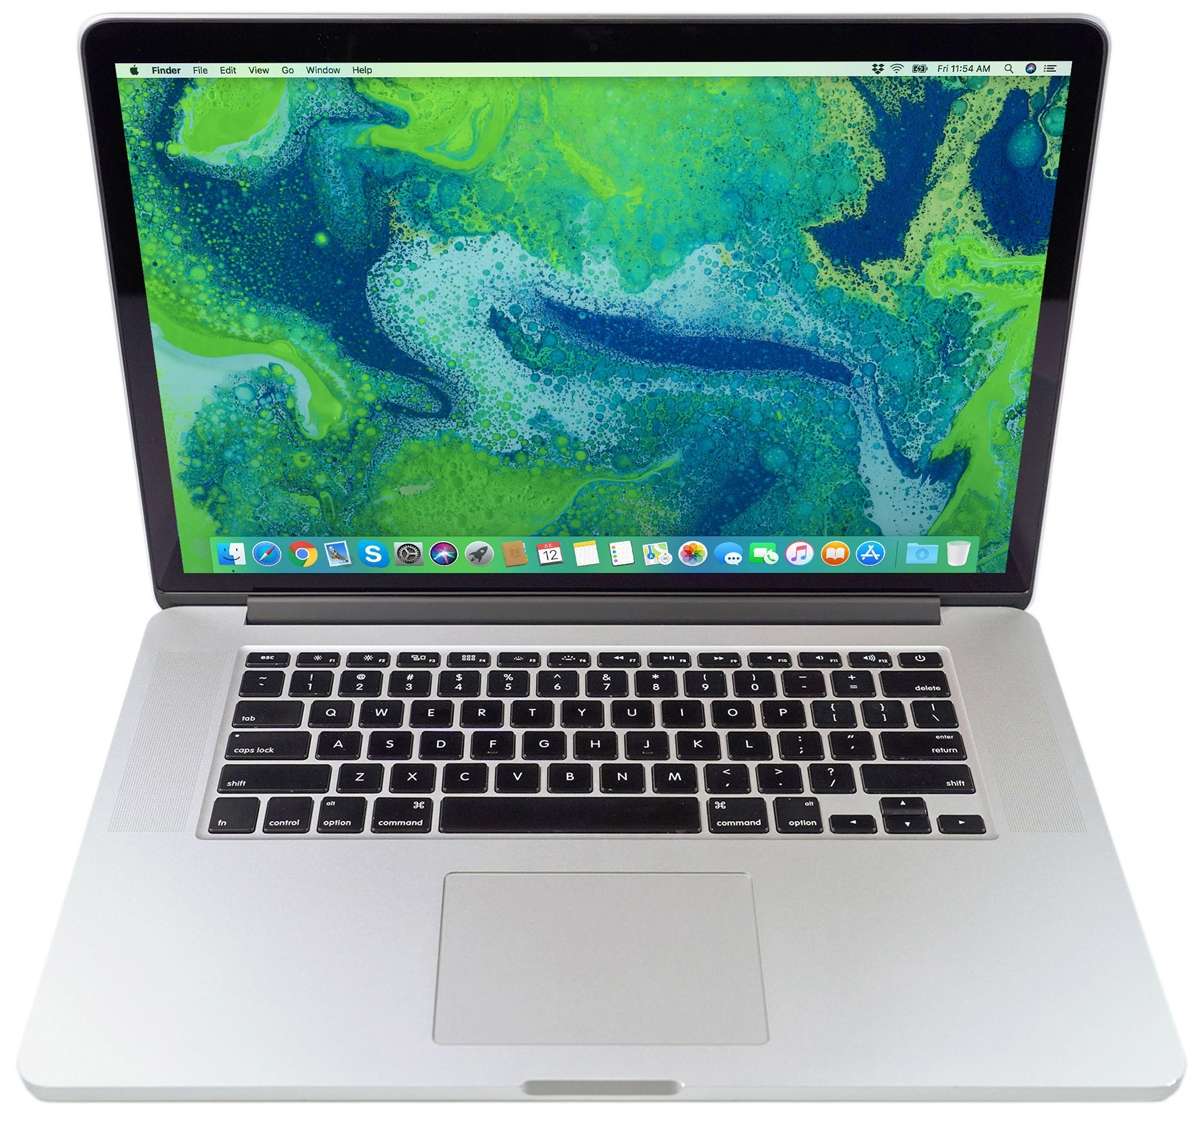 2013 Apple MacBook Pro Core i7 2.8 15 Dual Graphics Retina Early 2013 -  ME698LL/A - MacBookPro10,1 - A1398